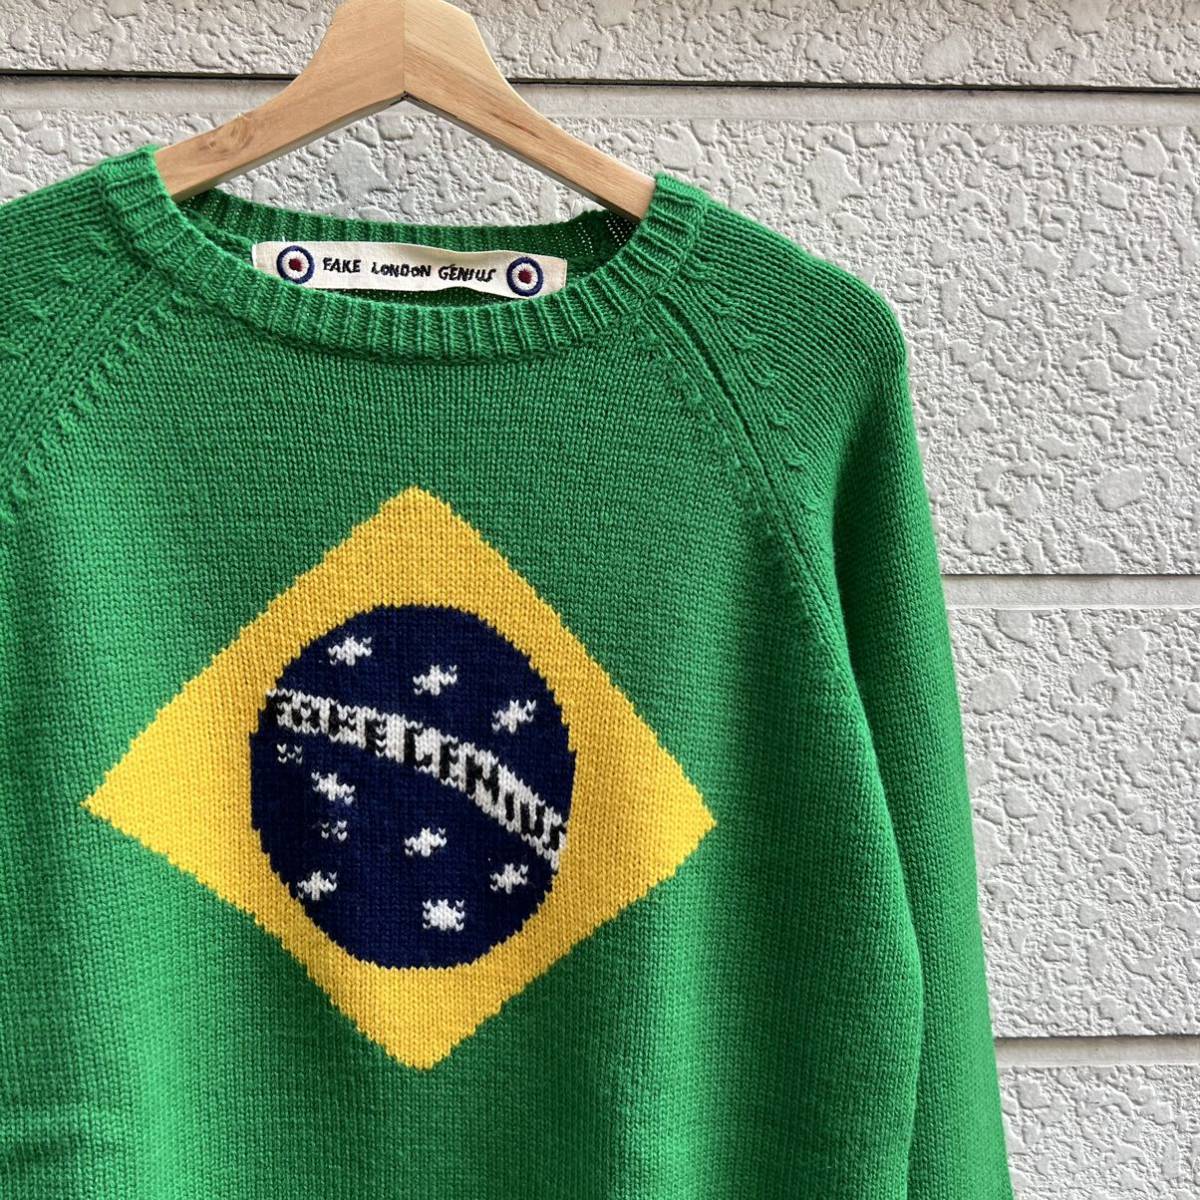 USED ユーロ古着 緑 ウールニット セーター デザインニット ブラジル柄 FAKE LONDON GENIUS euro vintage ヴィンテージ 国旗柄 Lサイズ